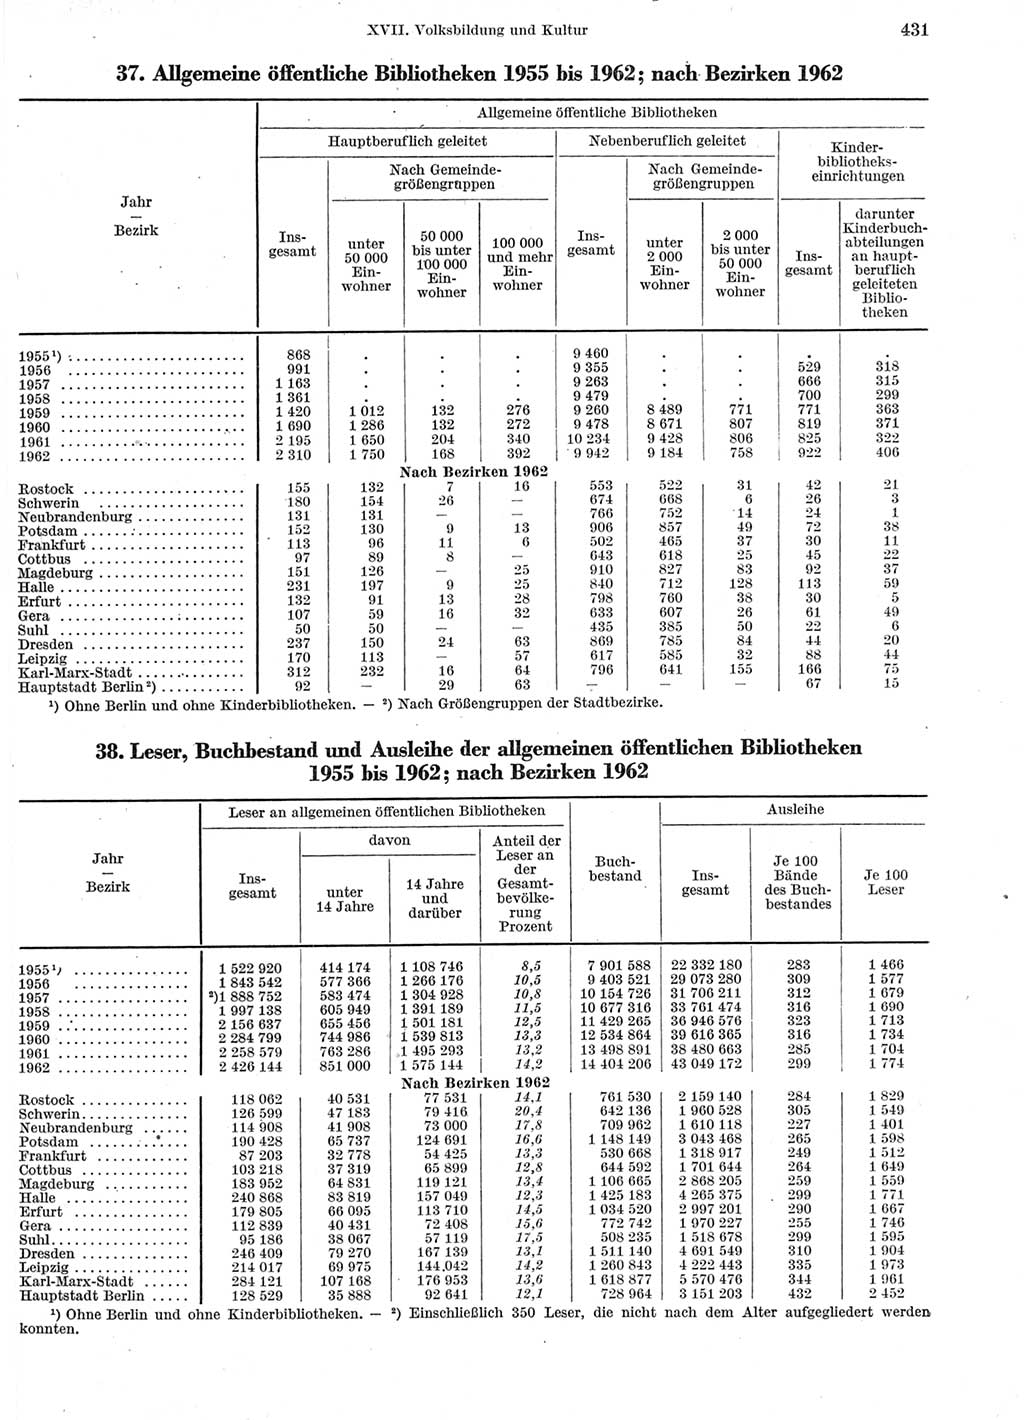 Statistisches Jahrbuch der Deutschen Demokratischen Republik (DDR) 1963, Seite 431 (Stat. Jb. DDR 1963, S. 431)